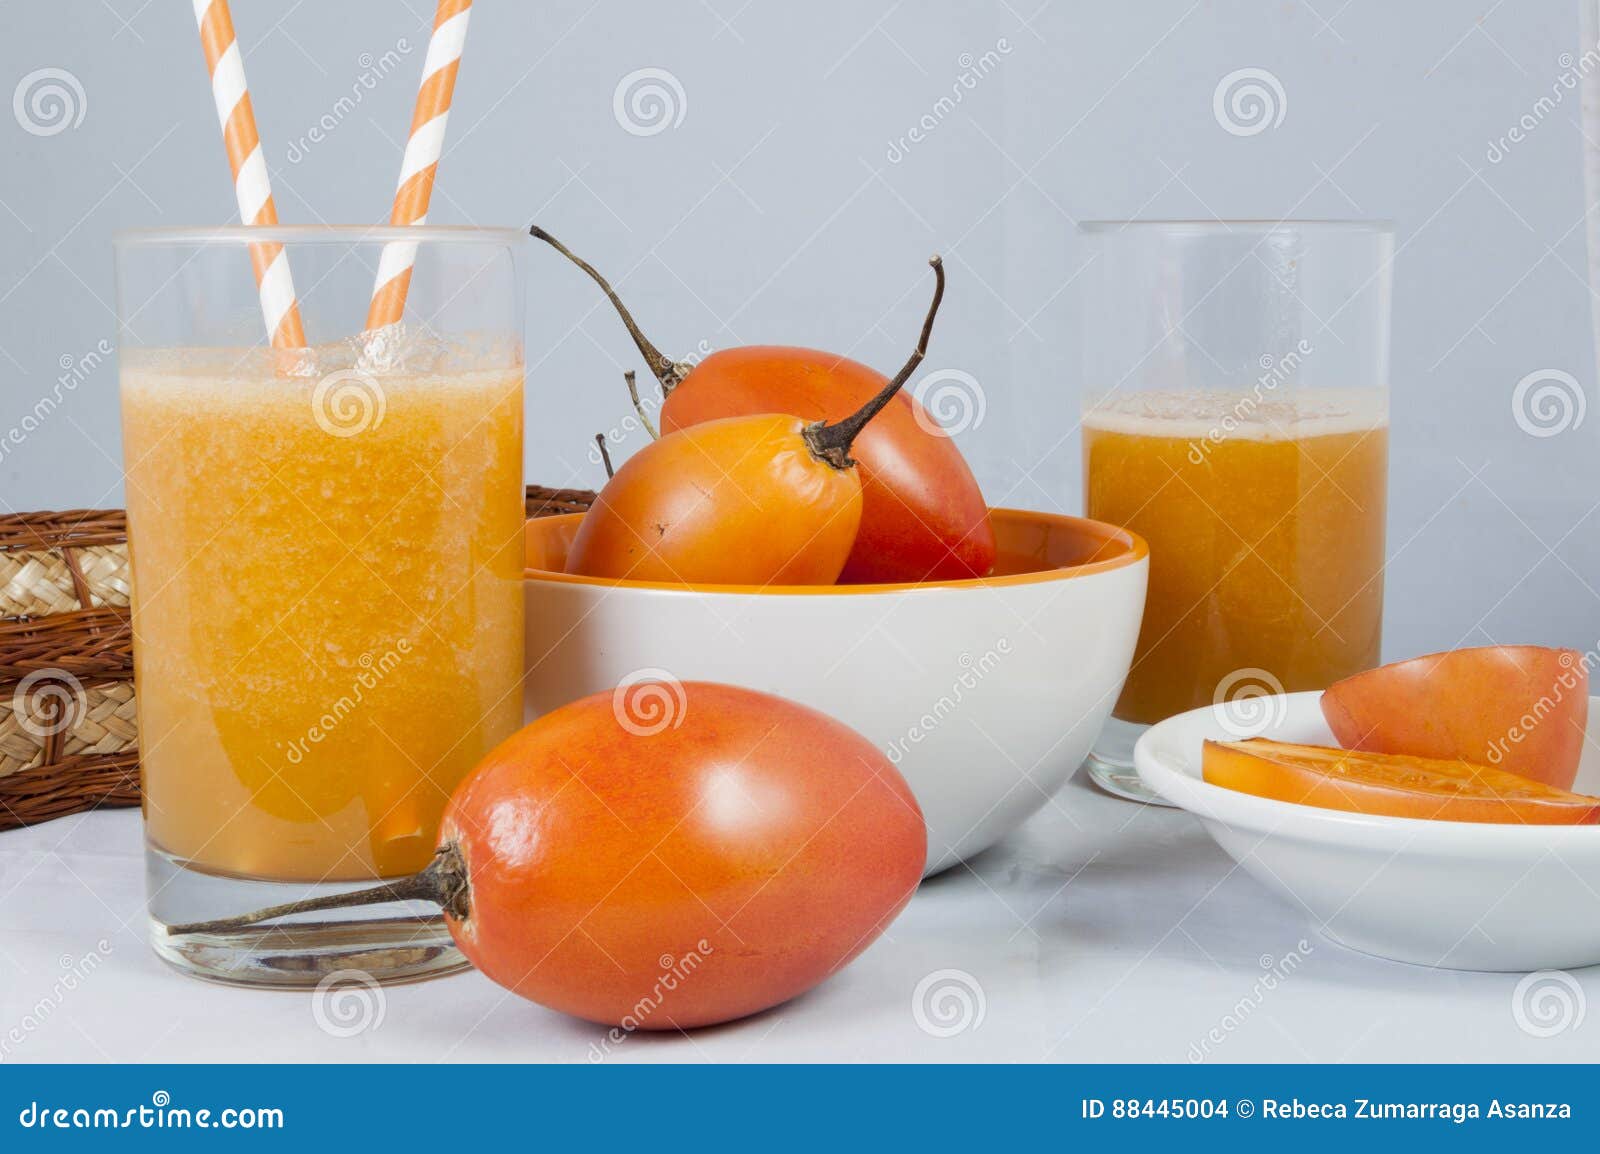 jugo de tomate de ÃÂ¡rbol